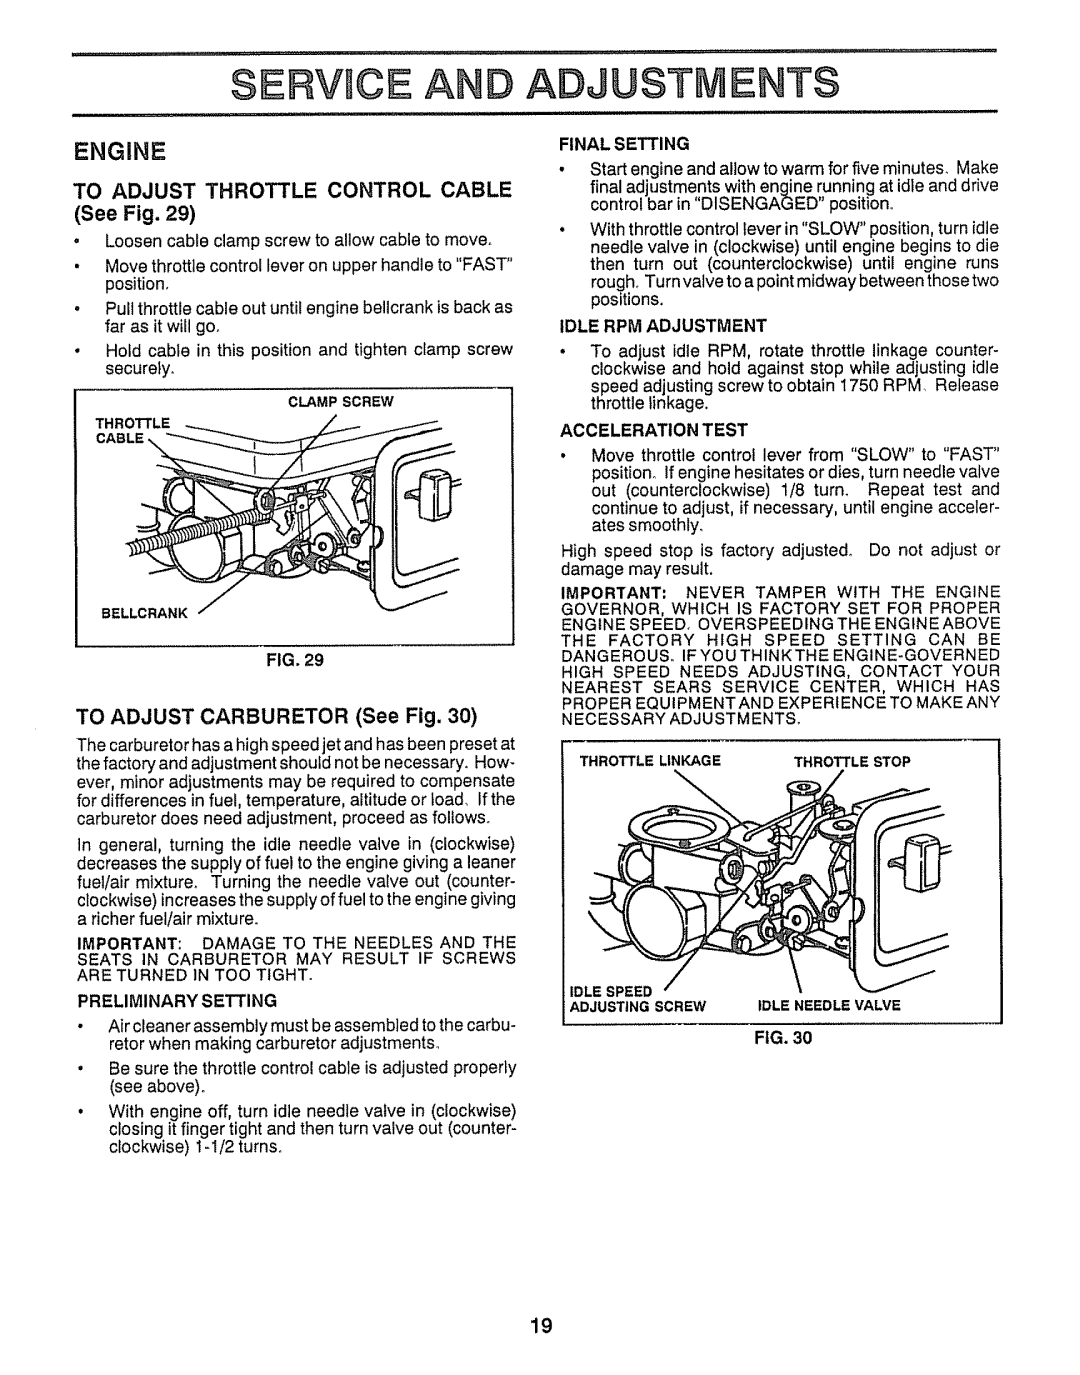 Craftsman 917.29555 Service A, Adjustments, To Adjust Throttle Control Cable, TO ADJUST CARBURETOR See Fig, Engine 